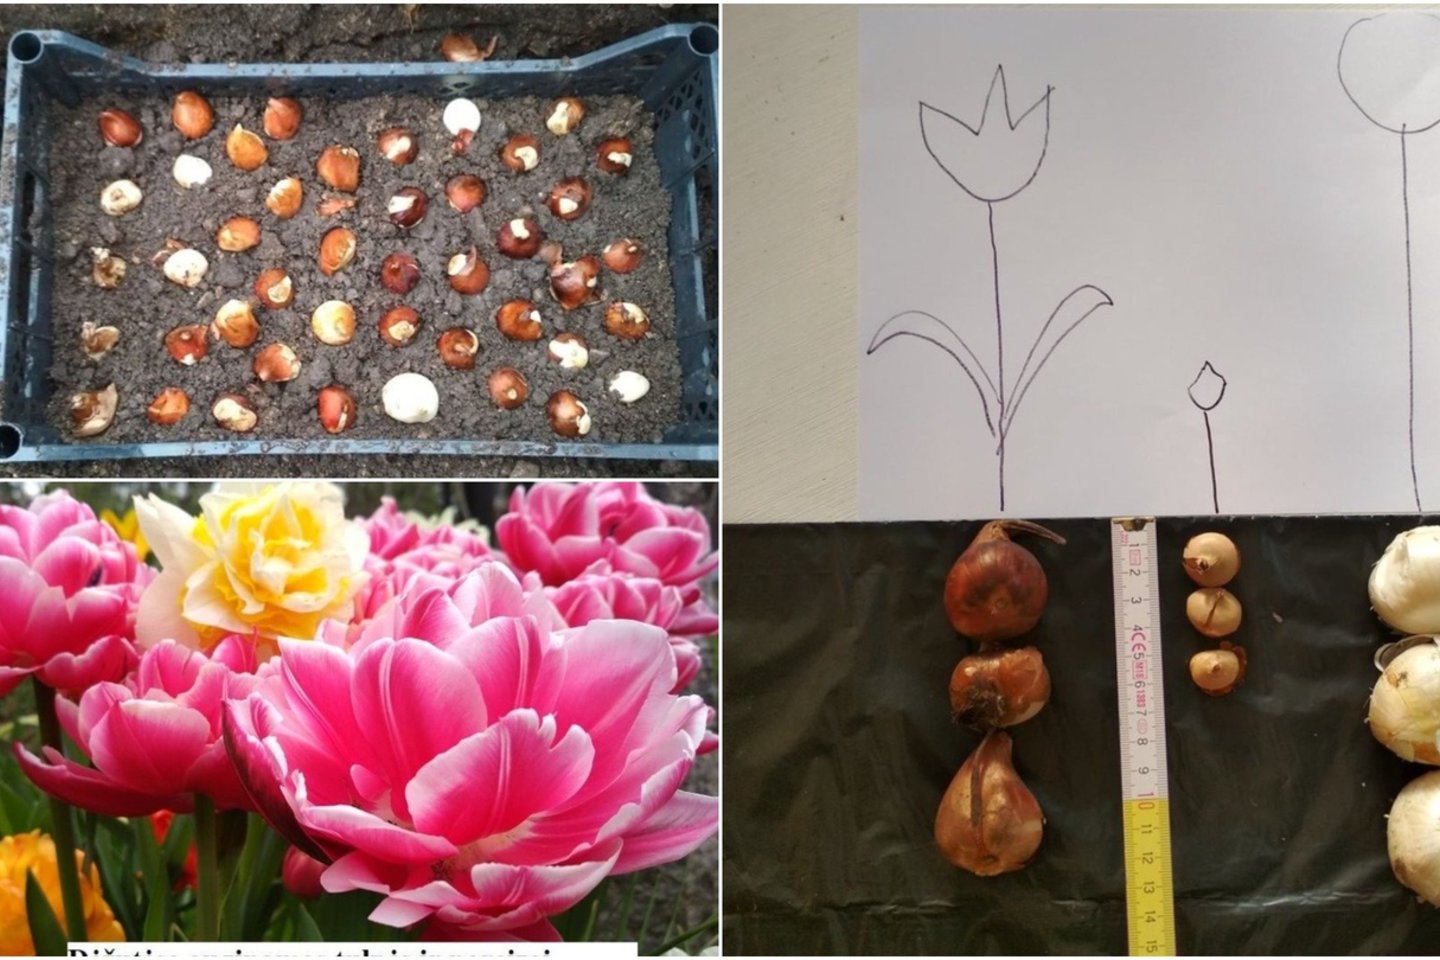 Vilnietė gėlių augintoja Sandra Stanislavičė pasidalijo savo patirtimi sodinant tulpes ir narcizus – jos būdas įdomesnis nei paprasčiausiai svogūnėlius sukišant į žemę.<br>lrytas.lt montažas